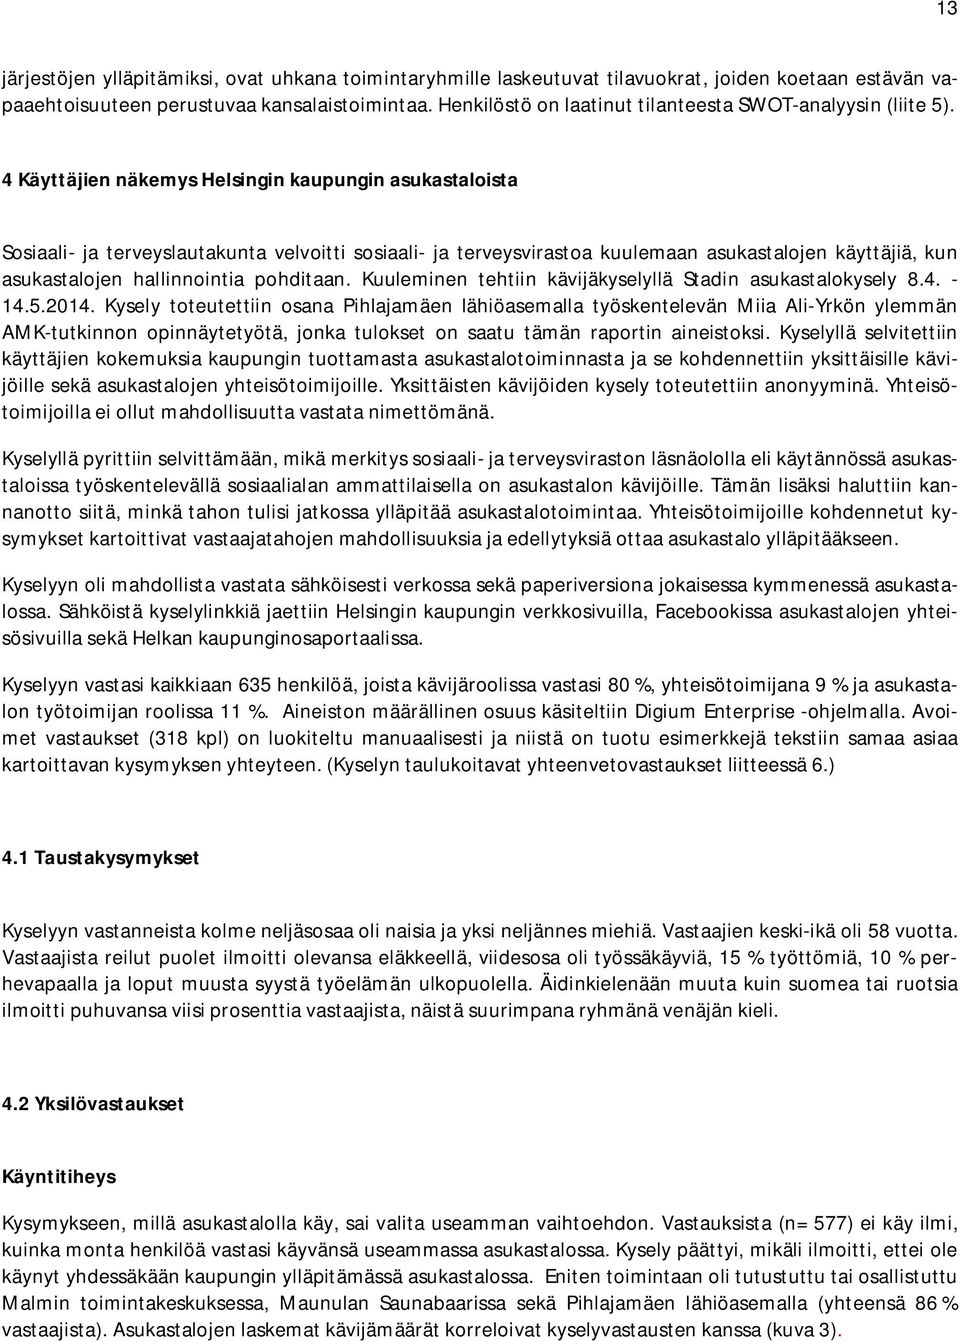 4 Käyttäjien näkemys Helsingin kaupungin asukastaloista Sosiaali- ja terveyslautakunta velvoitti sosiaali- ja terveysvirastoa kuulemaan asukastalojen käyttäjiä, kun asukastalojen hallinnointia